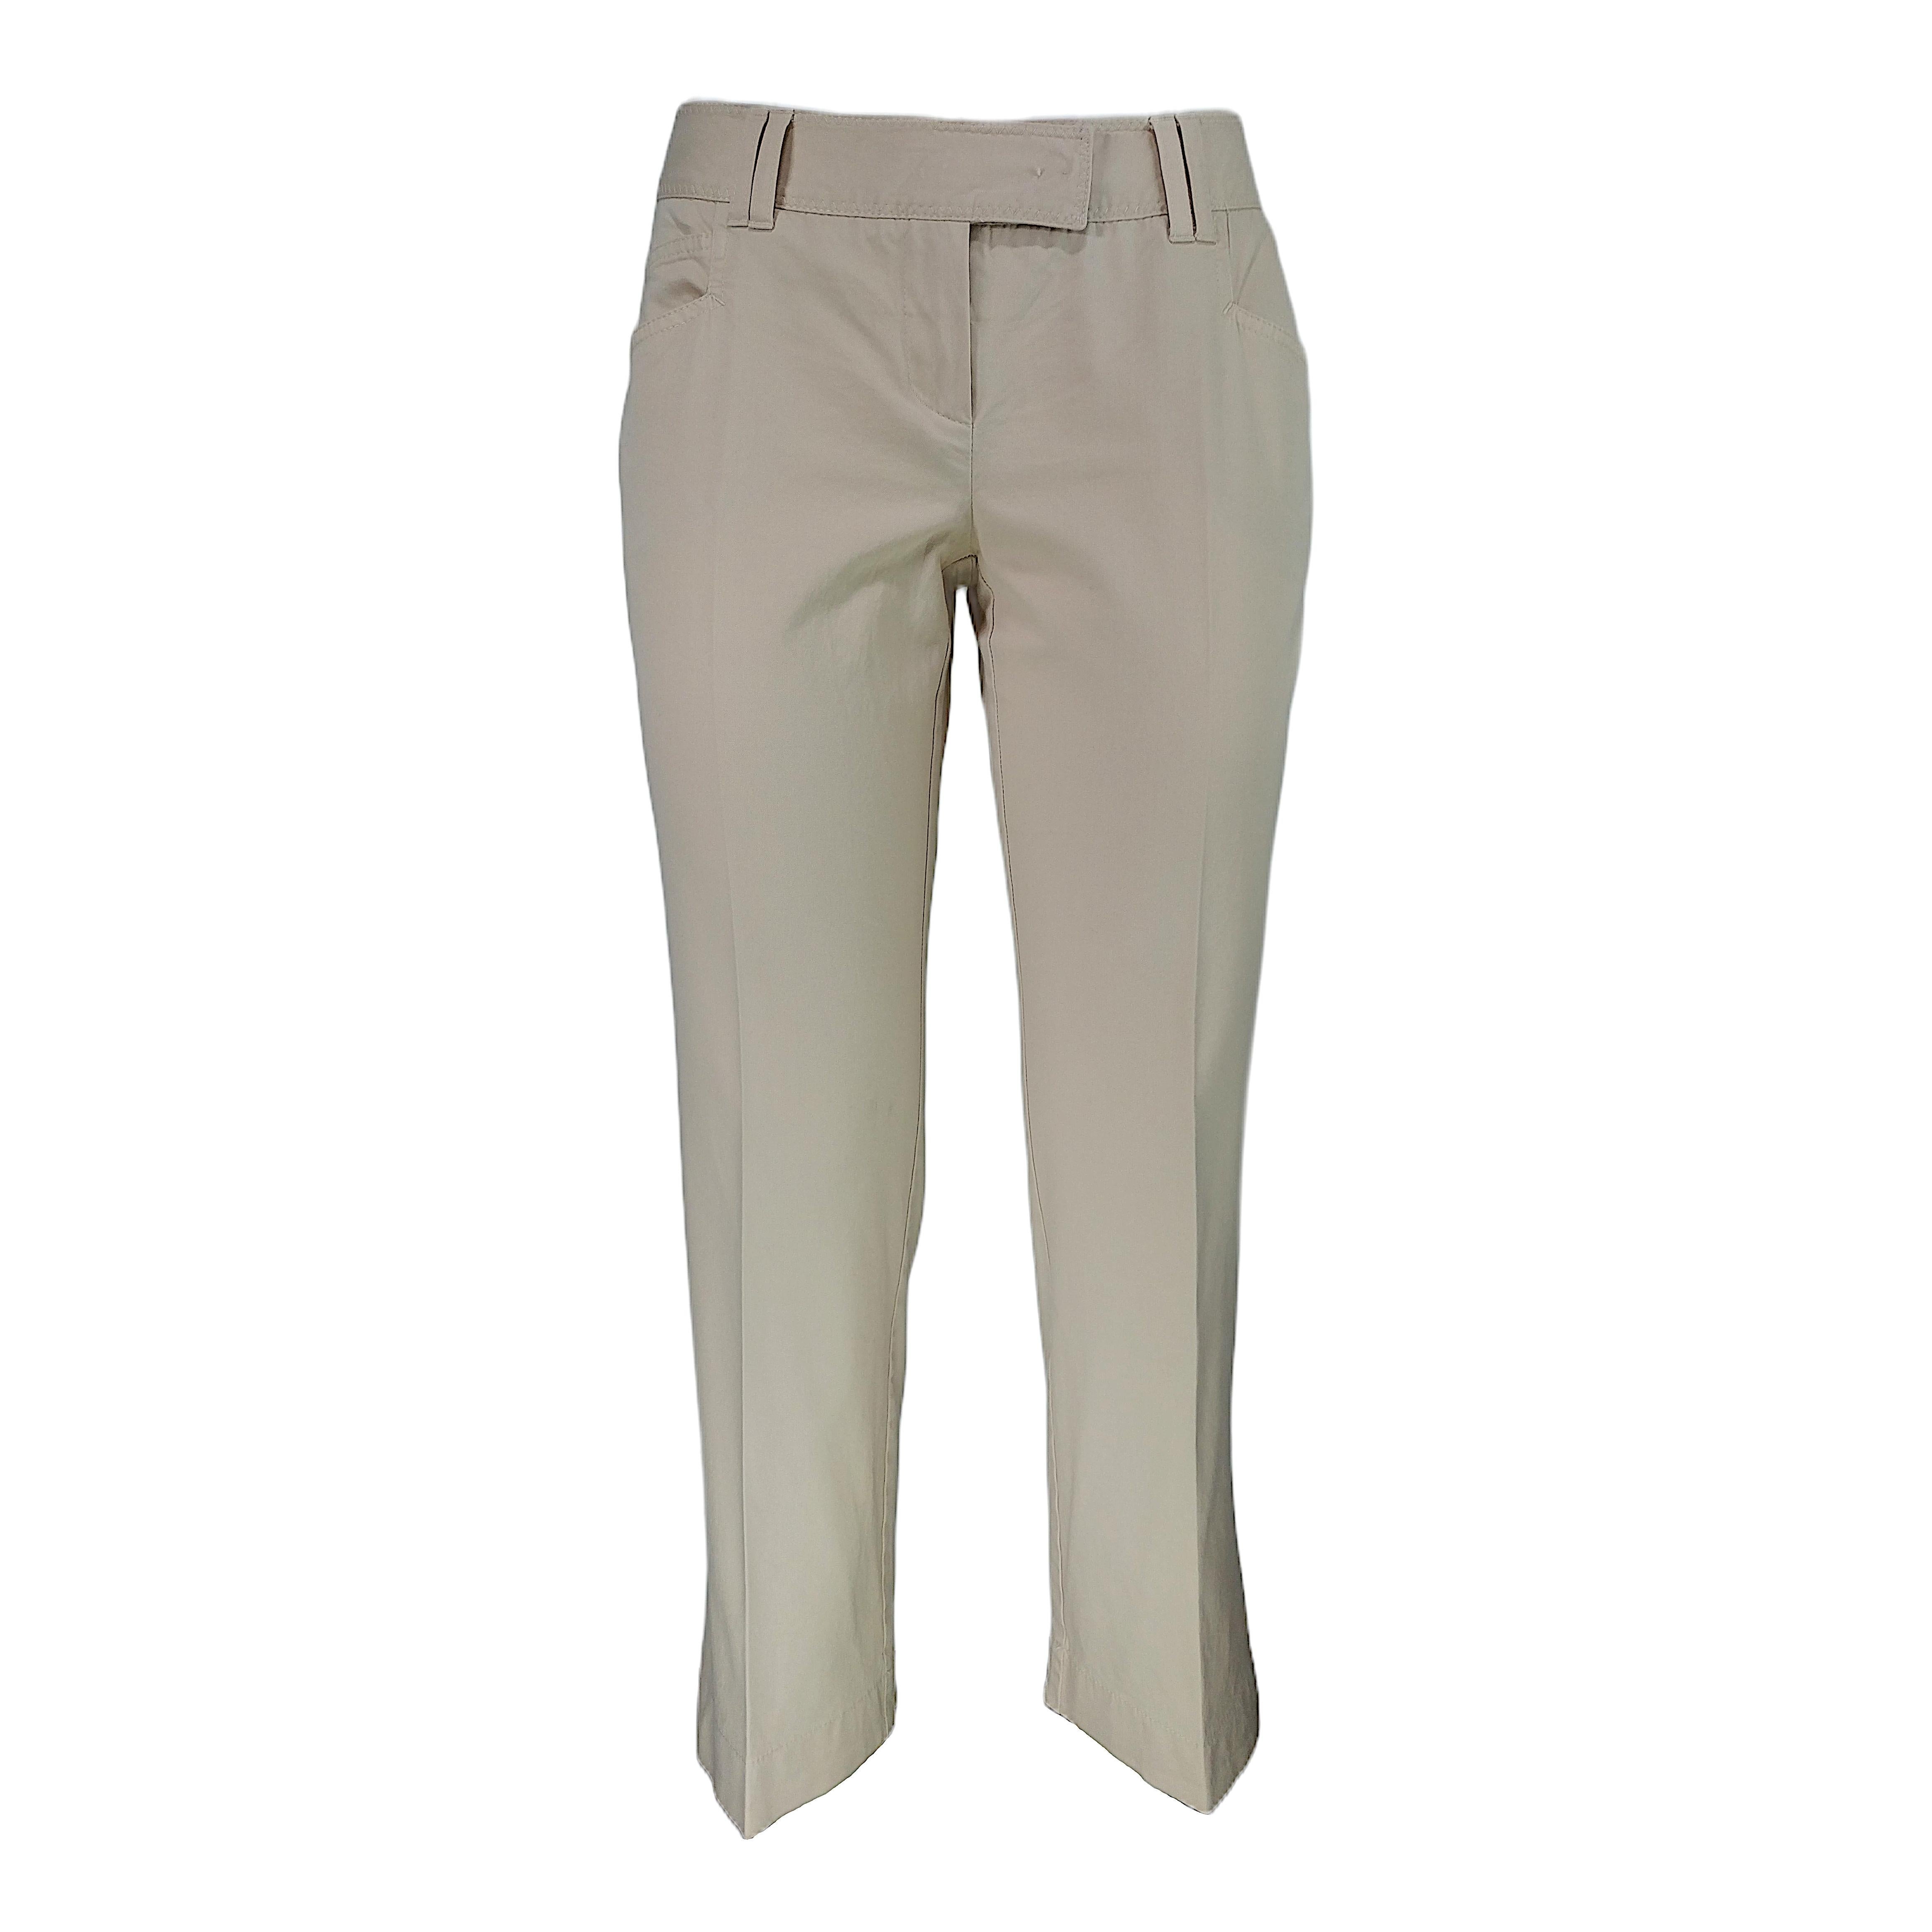 CHRISTIAN DIOR - Vintage Beige Cotton Capri 7/8 Pants | Size 6US 38EU For Sale